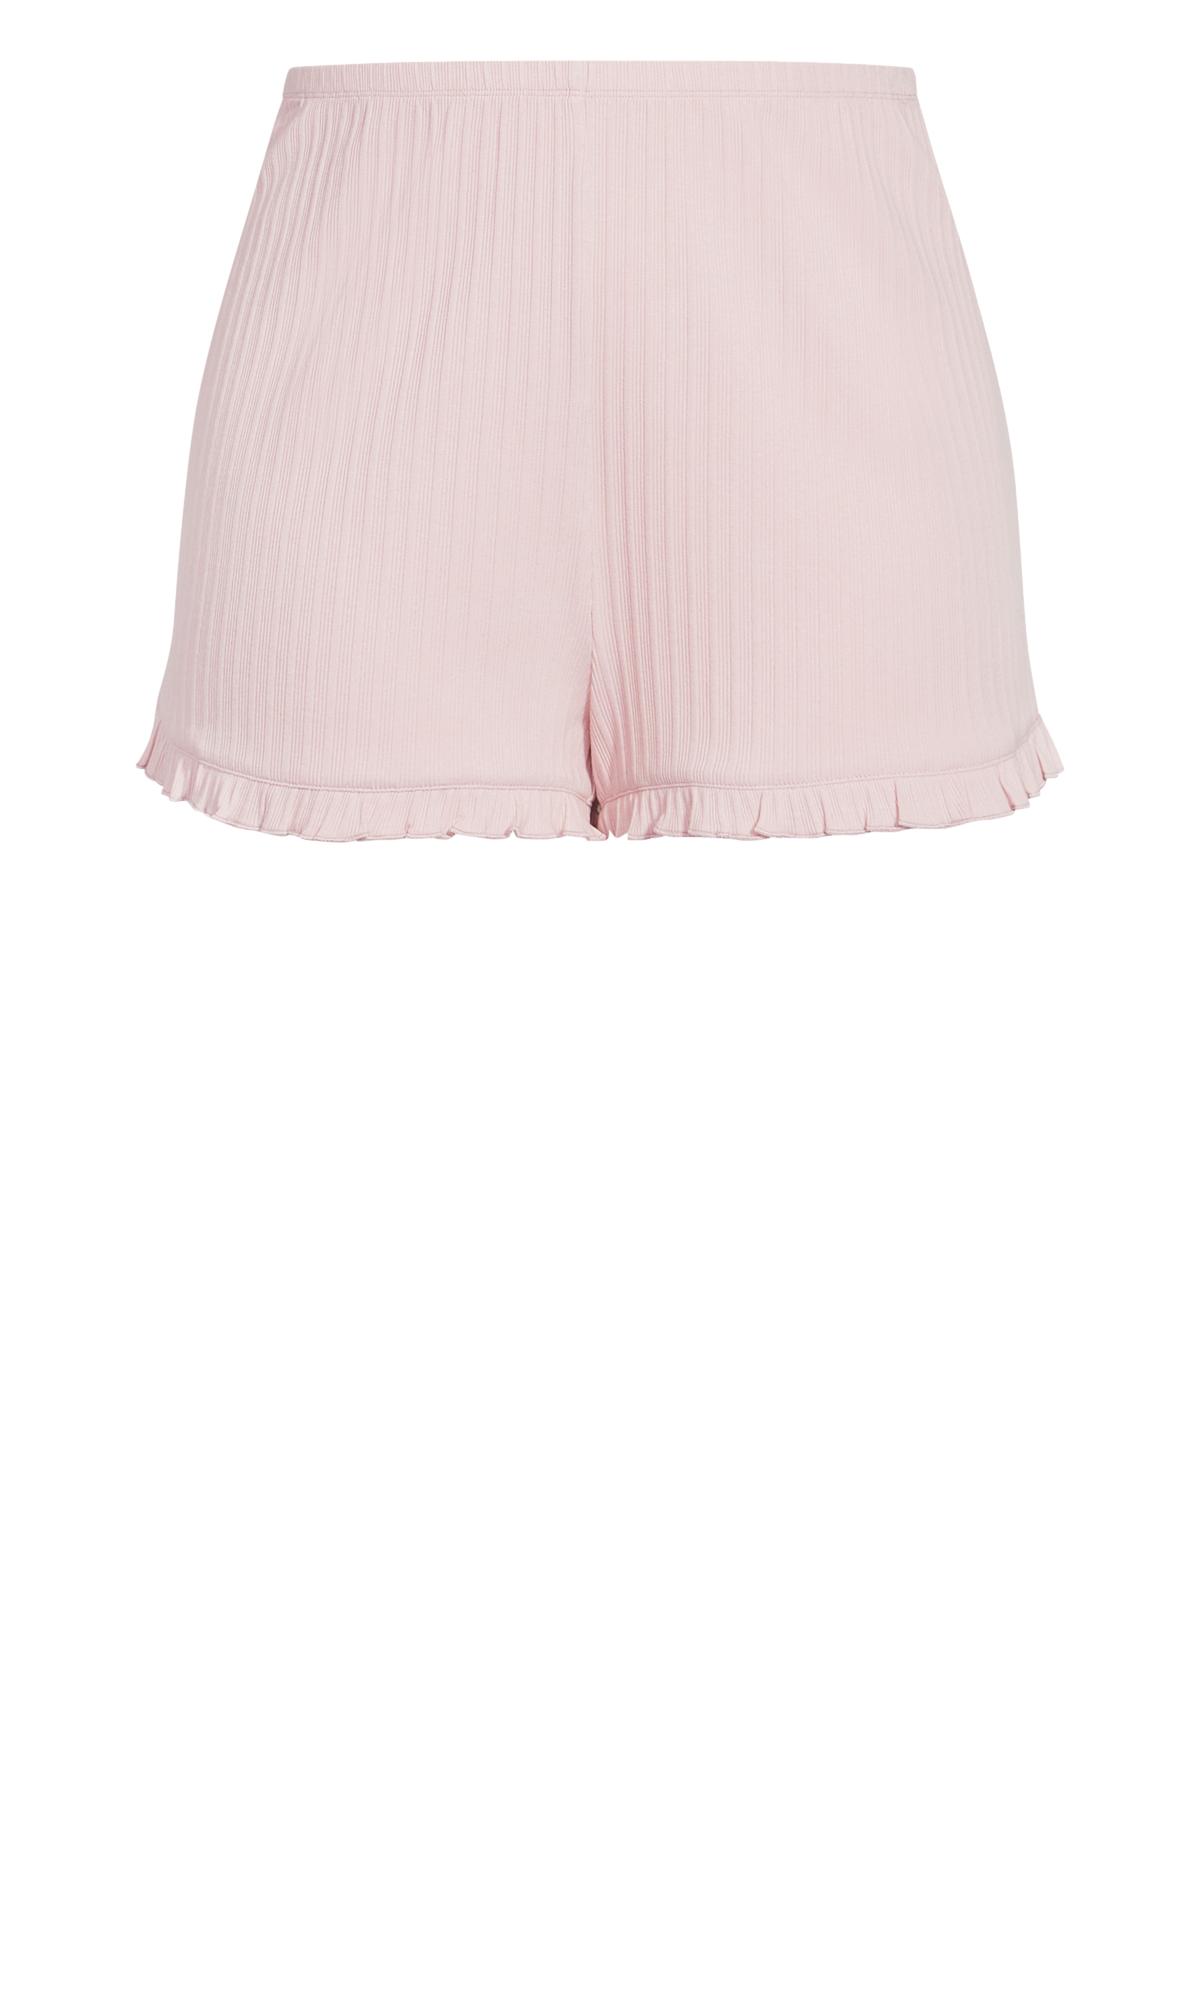 Ribbed Pink Frill Shorts 2